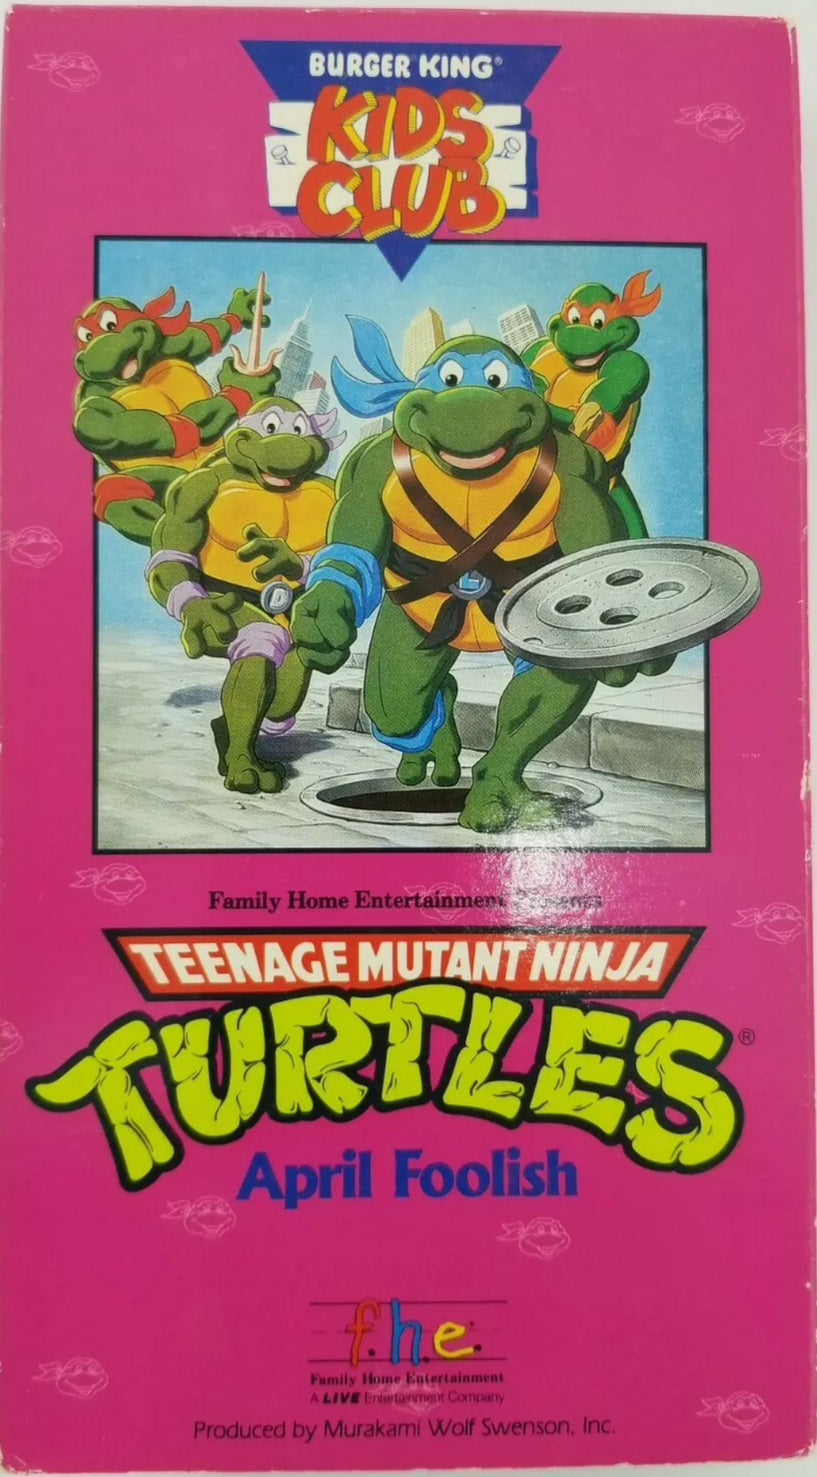 Teenage Mutant Ninja Turtles: April Foolish